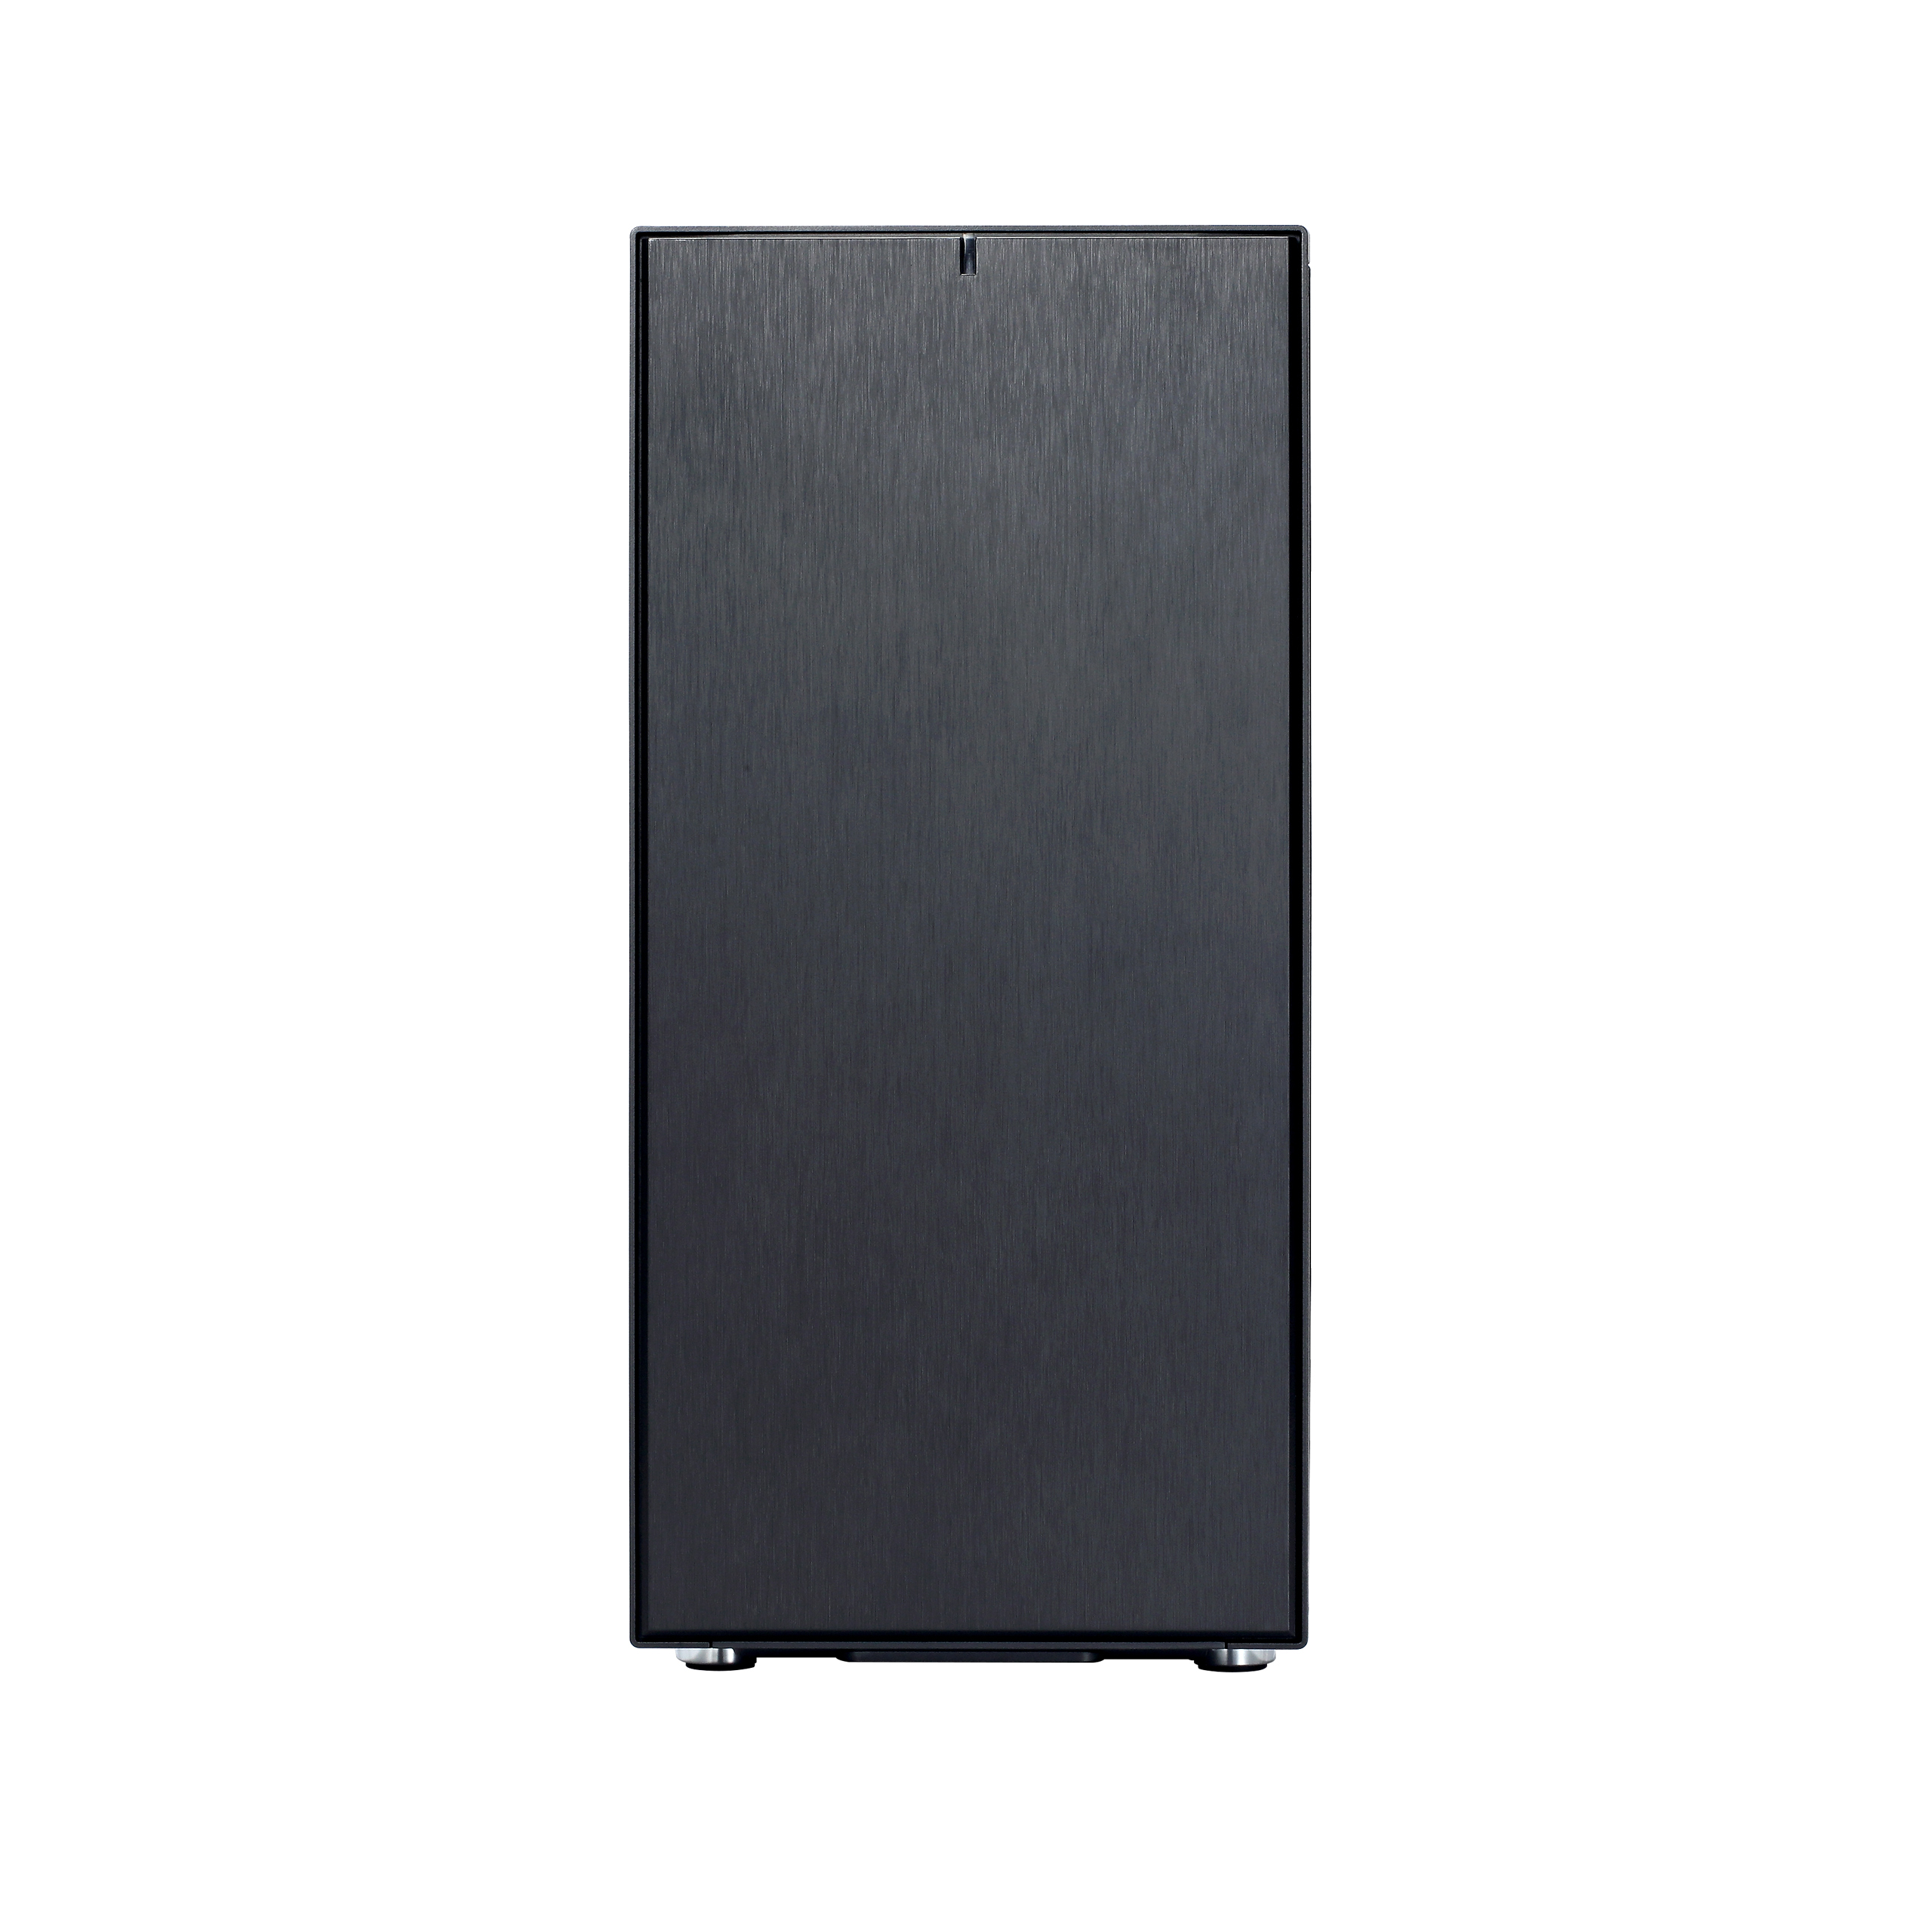 Fractal Design - Fractal Design Define C Midi Tower Case - Black